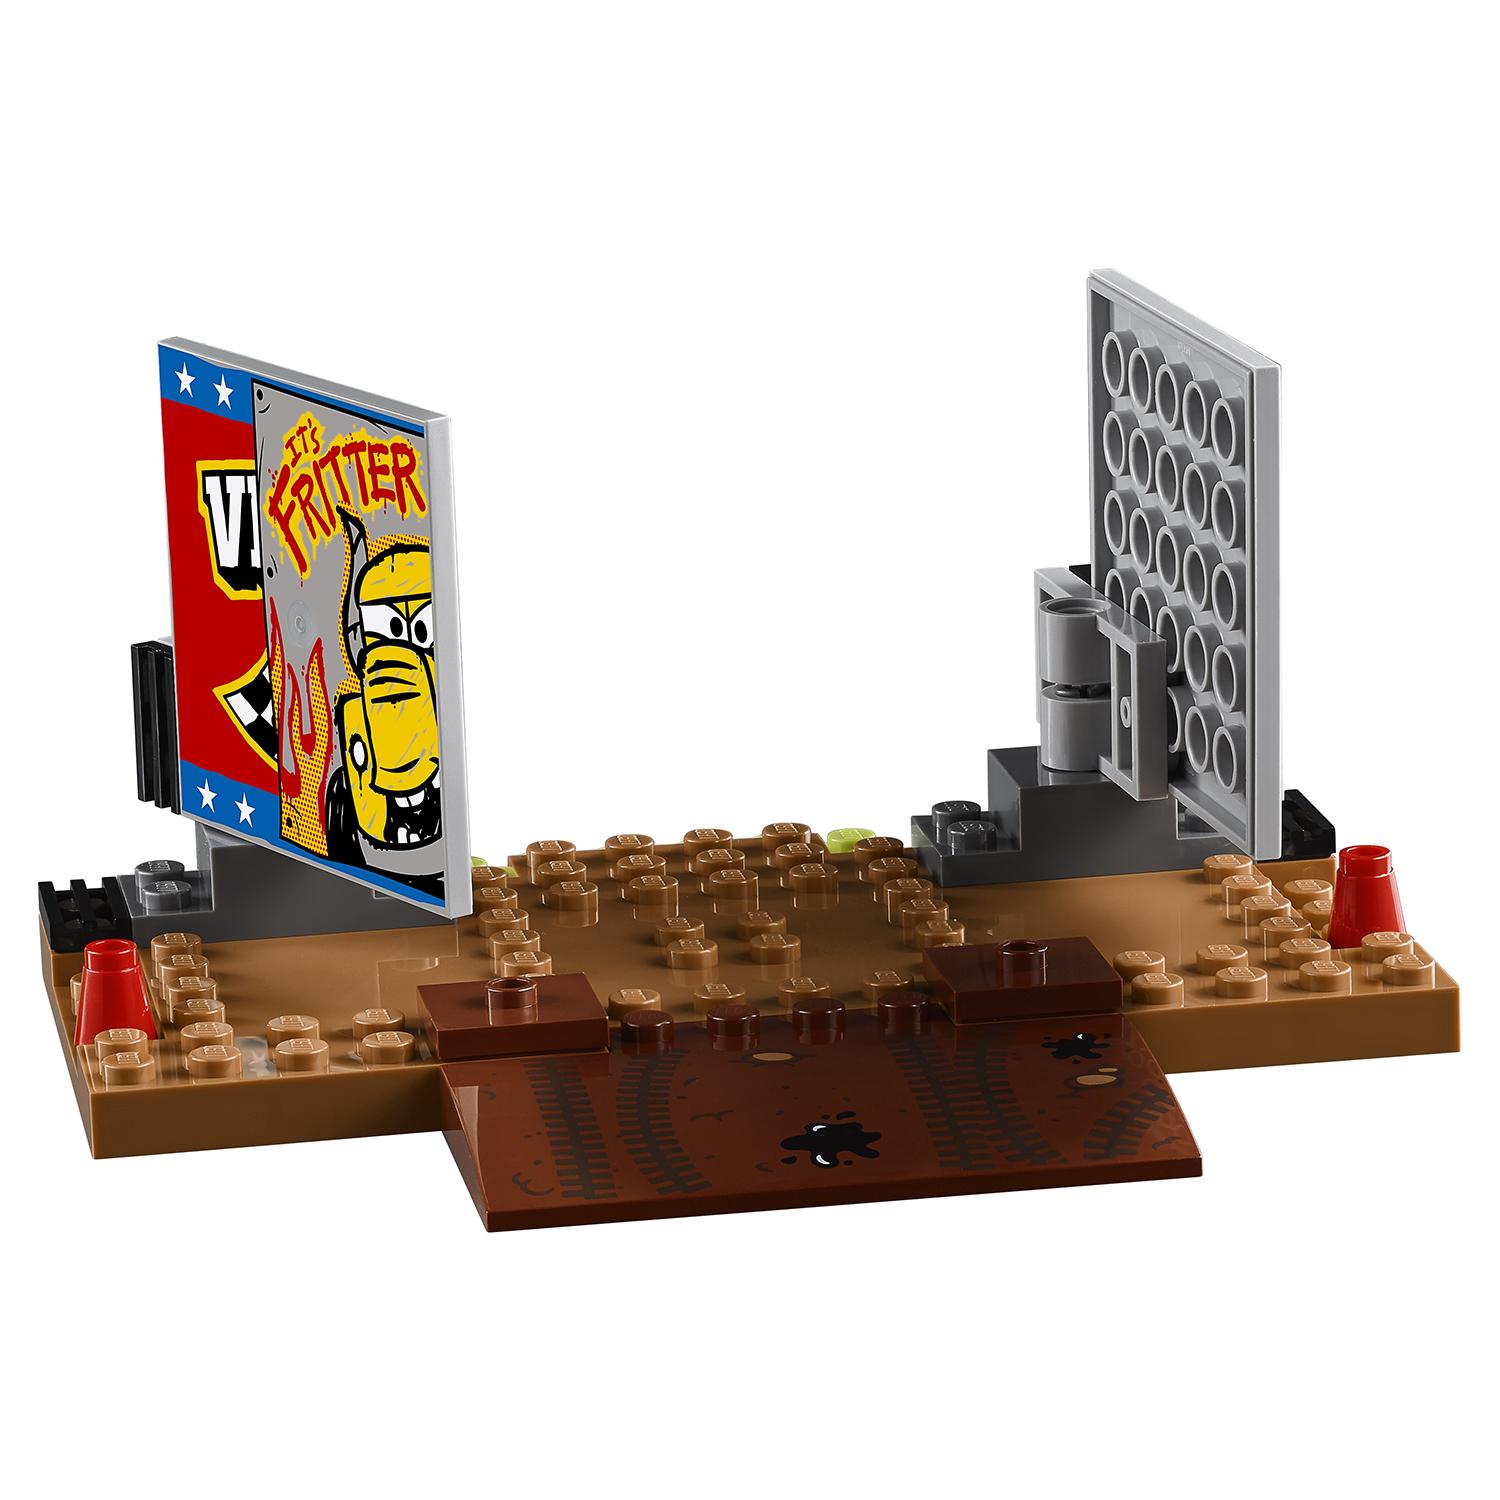 Lego Juniors 10744 Сумасшедшая восьмерка